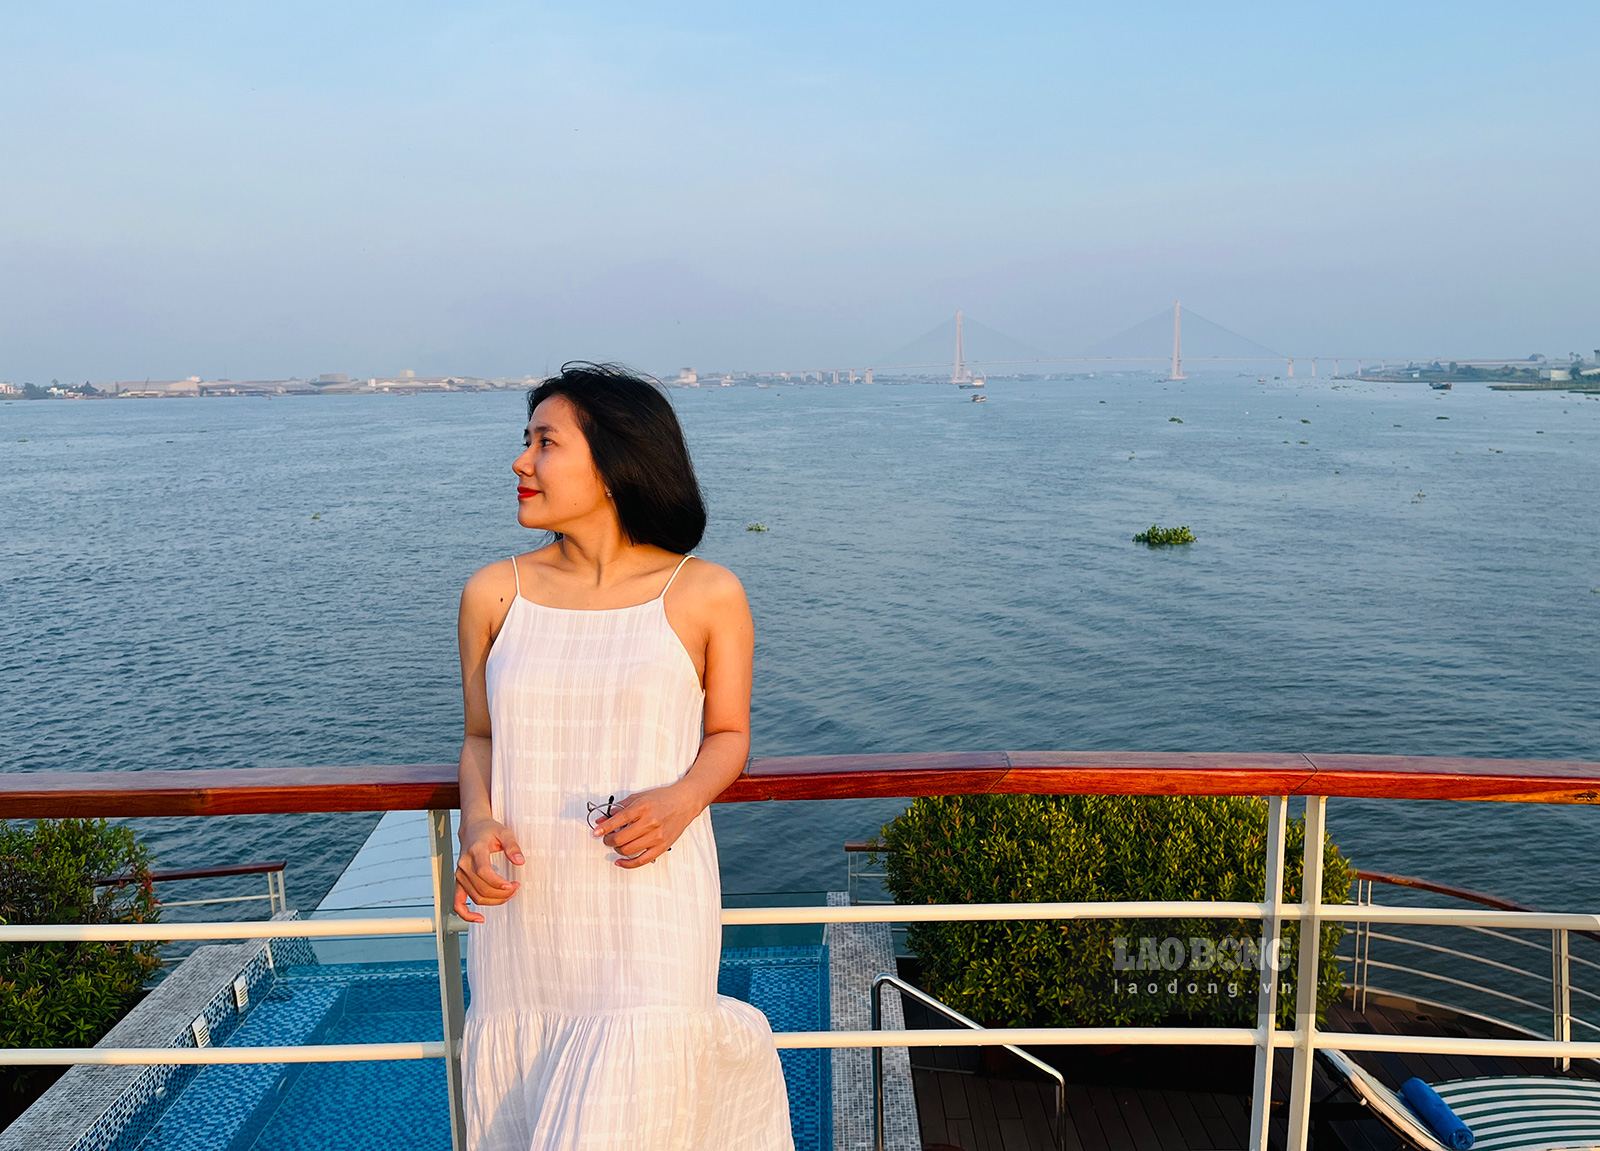 Trên tầng cao nhất là khu vực sân golf mini, nơi có ghế tắm nắng và bàn ghế để khách ngồi nghỉ, ngắm nhìn toàn cảnh sông Mekong. Đây cũng là vị trí yêu thích của nhiều người nếu muốn đón bình minh hoặc hoàng hôn, tận hưởng những làn gió mát lành. 